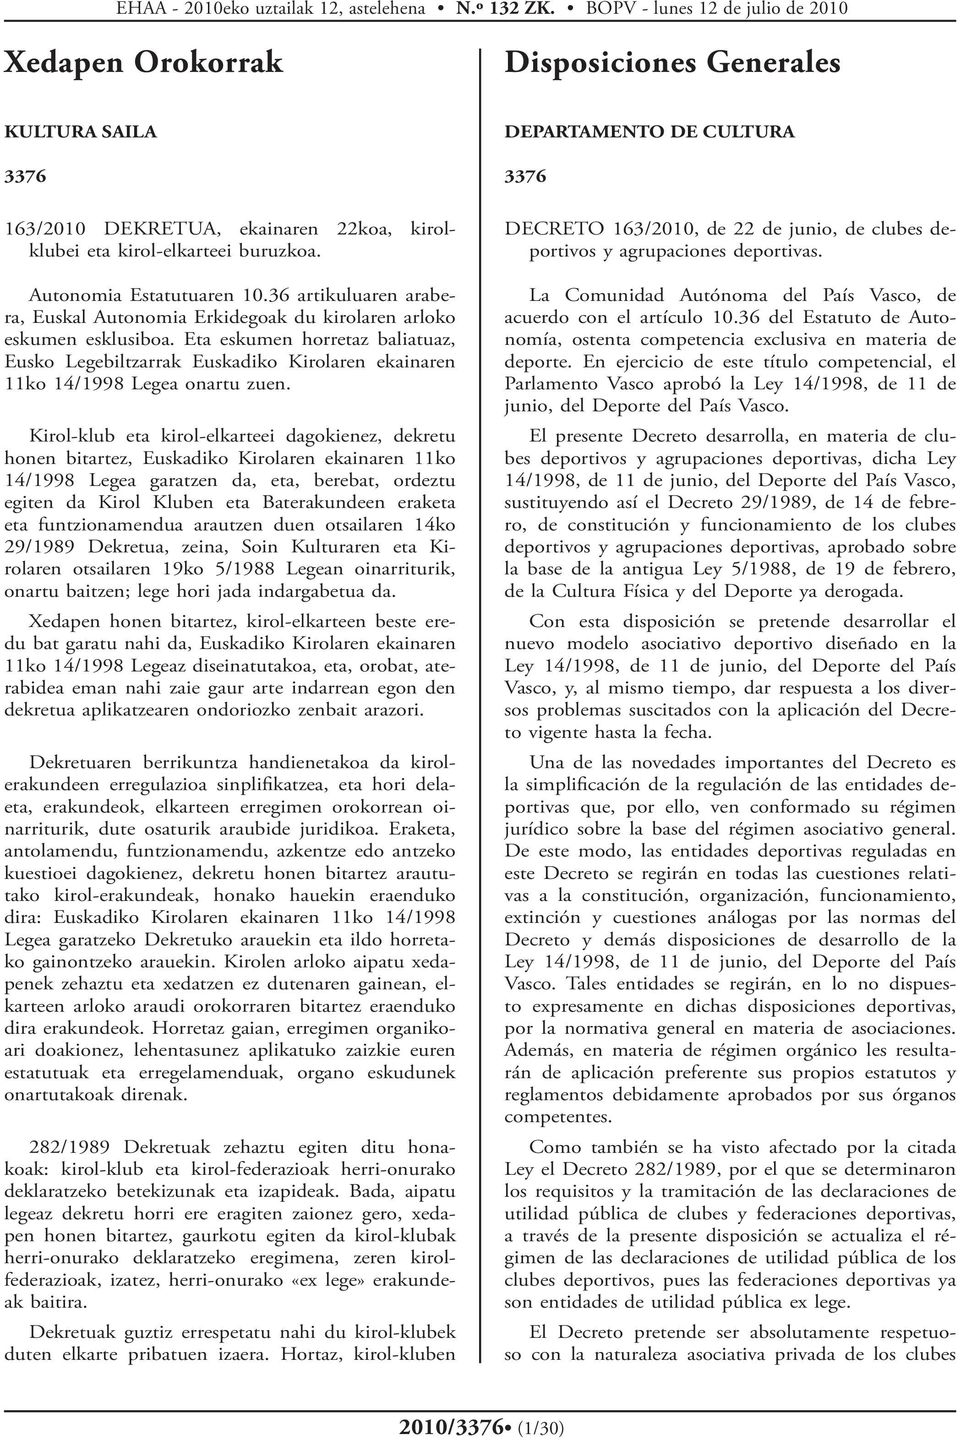 Eta eskumen horretaz baliatuaz, Eusko Legebiltzarrak Euskadiko Kirolaren ekainaren 11ko 14/1998 Legea onartu zuen.